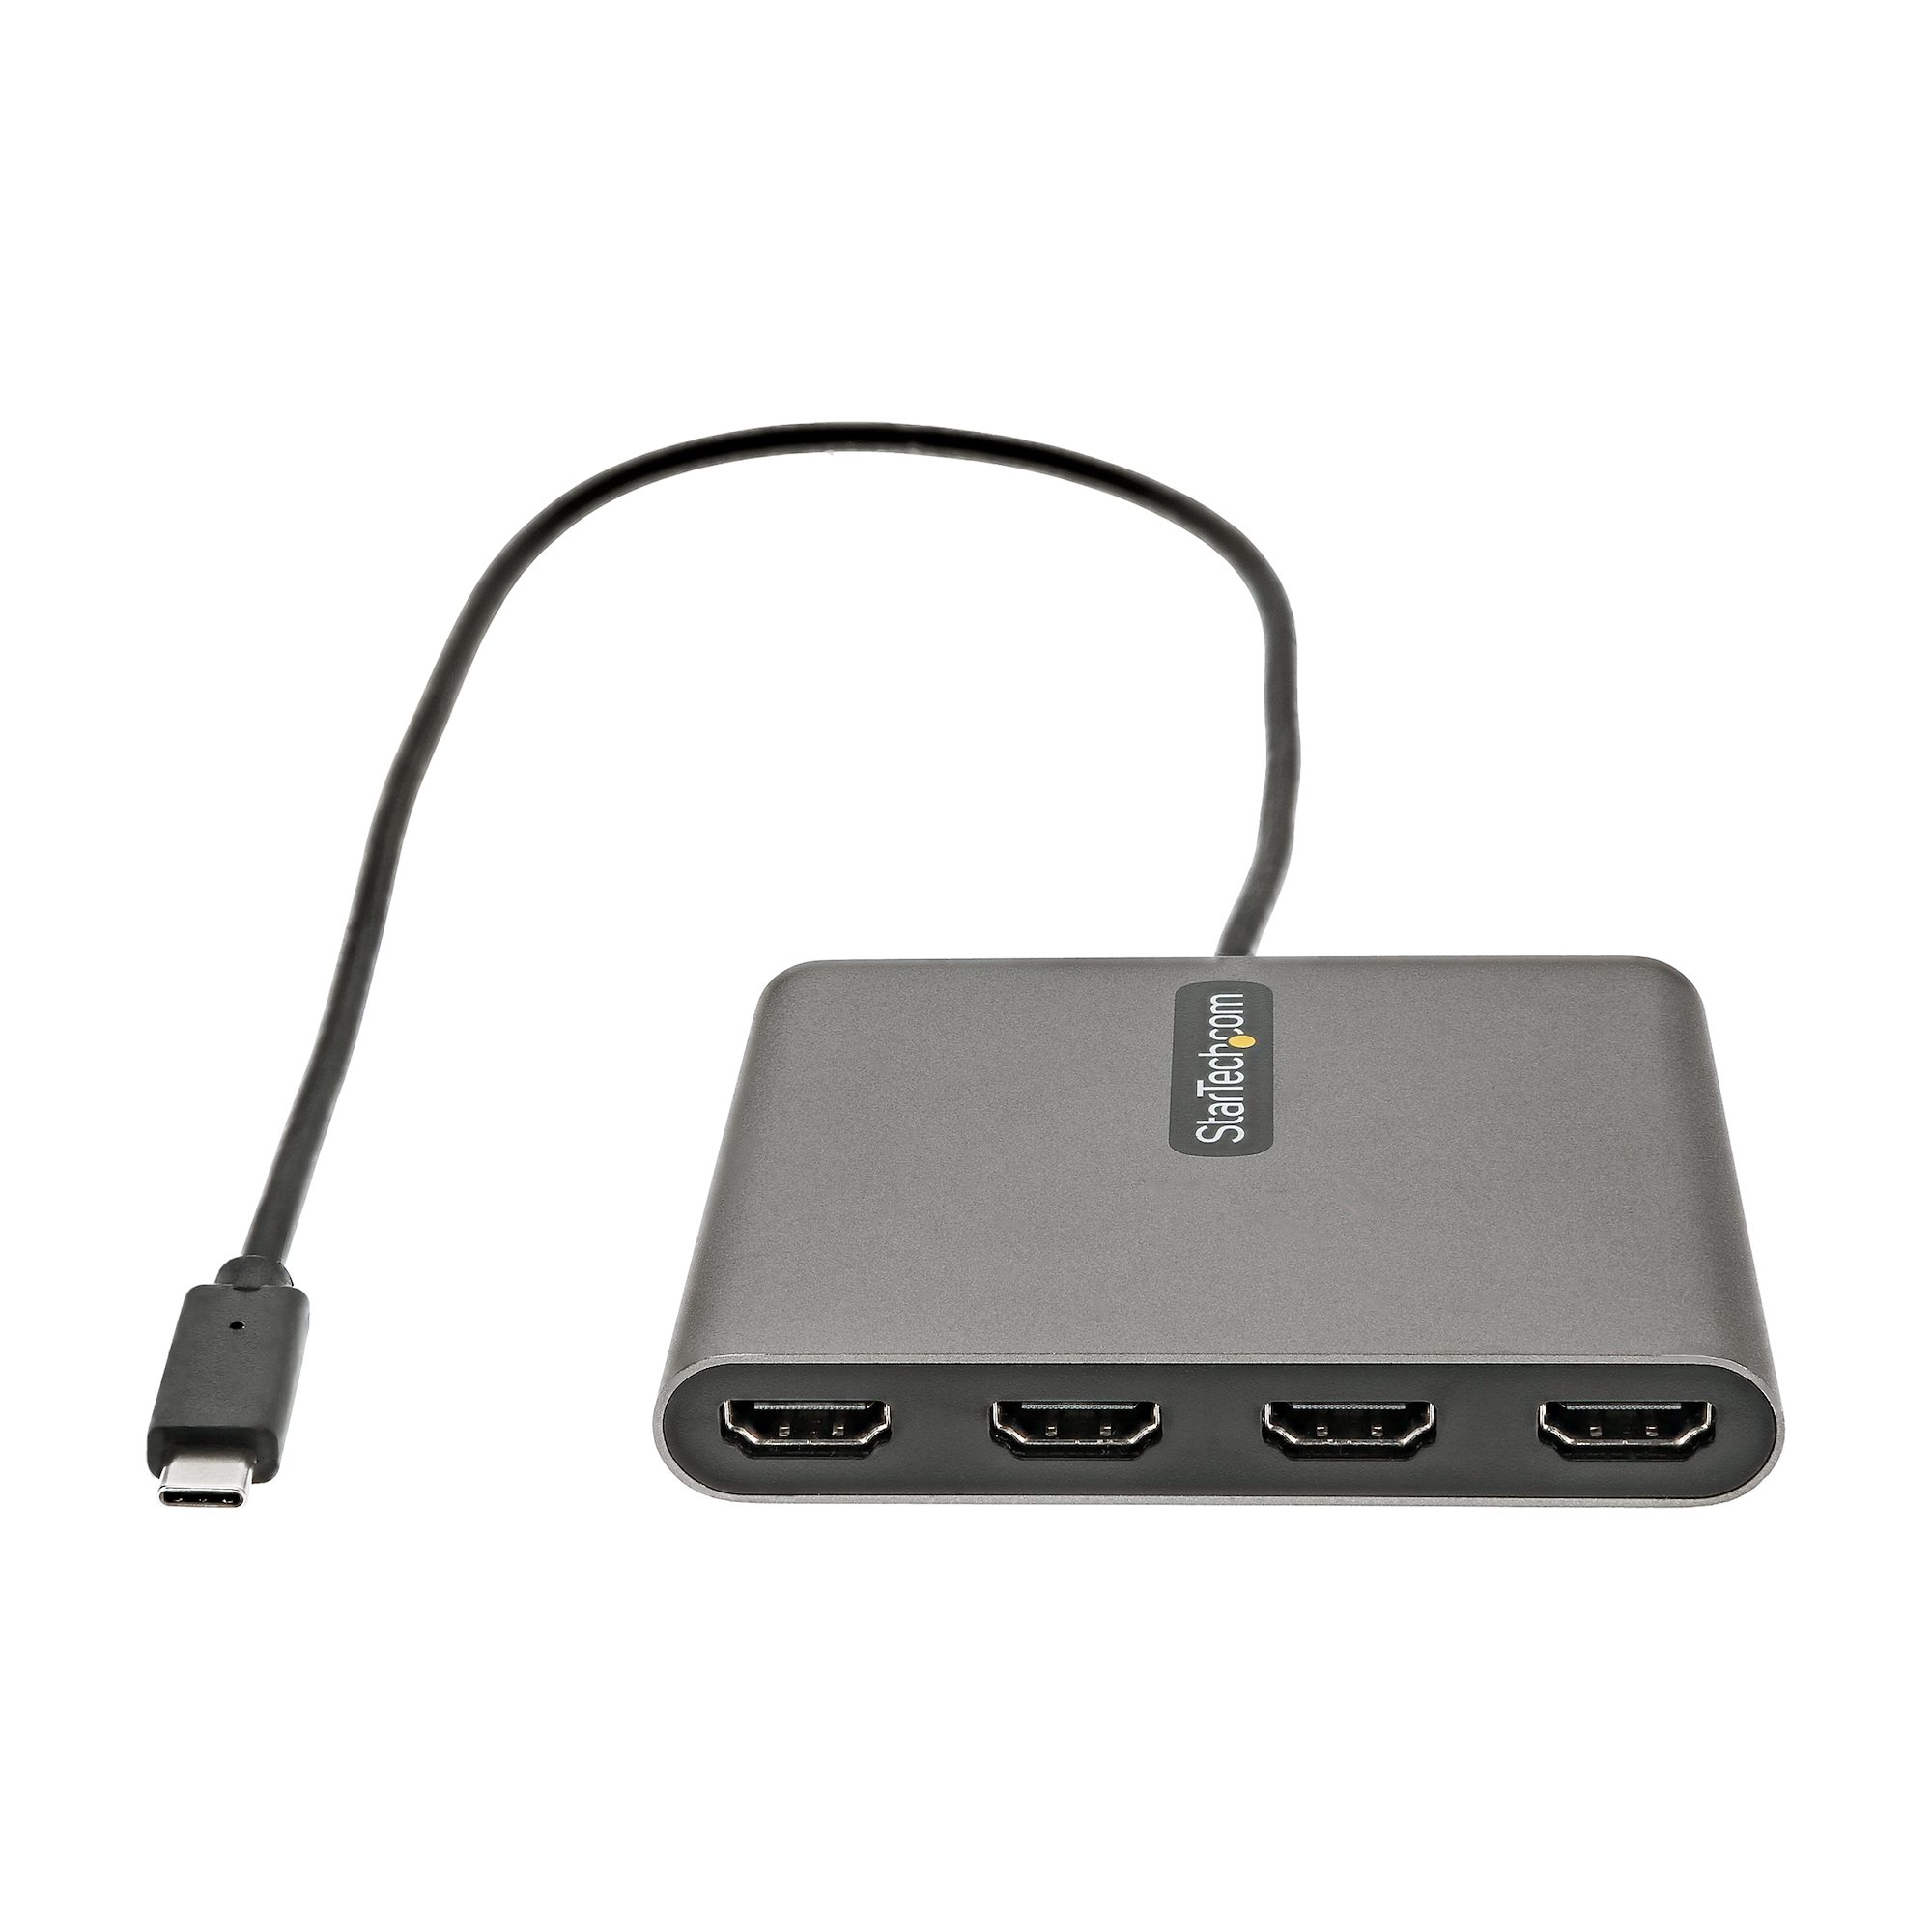 StarTech.com USB 3.0接続クアッドHDMIディスプレイ変換アダプタ - パーツ